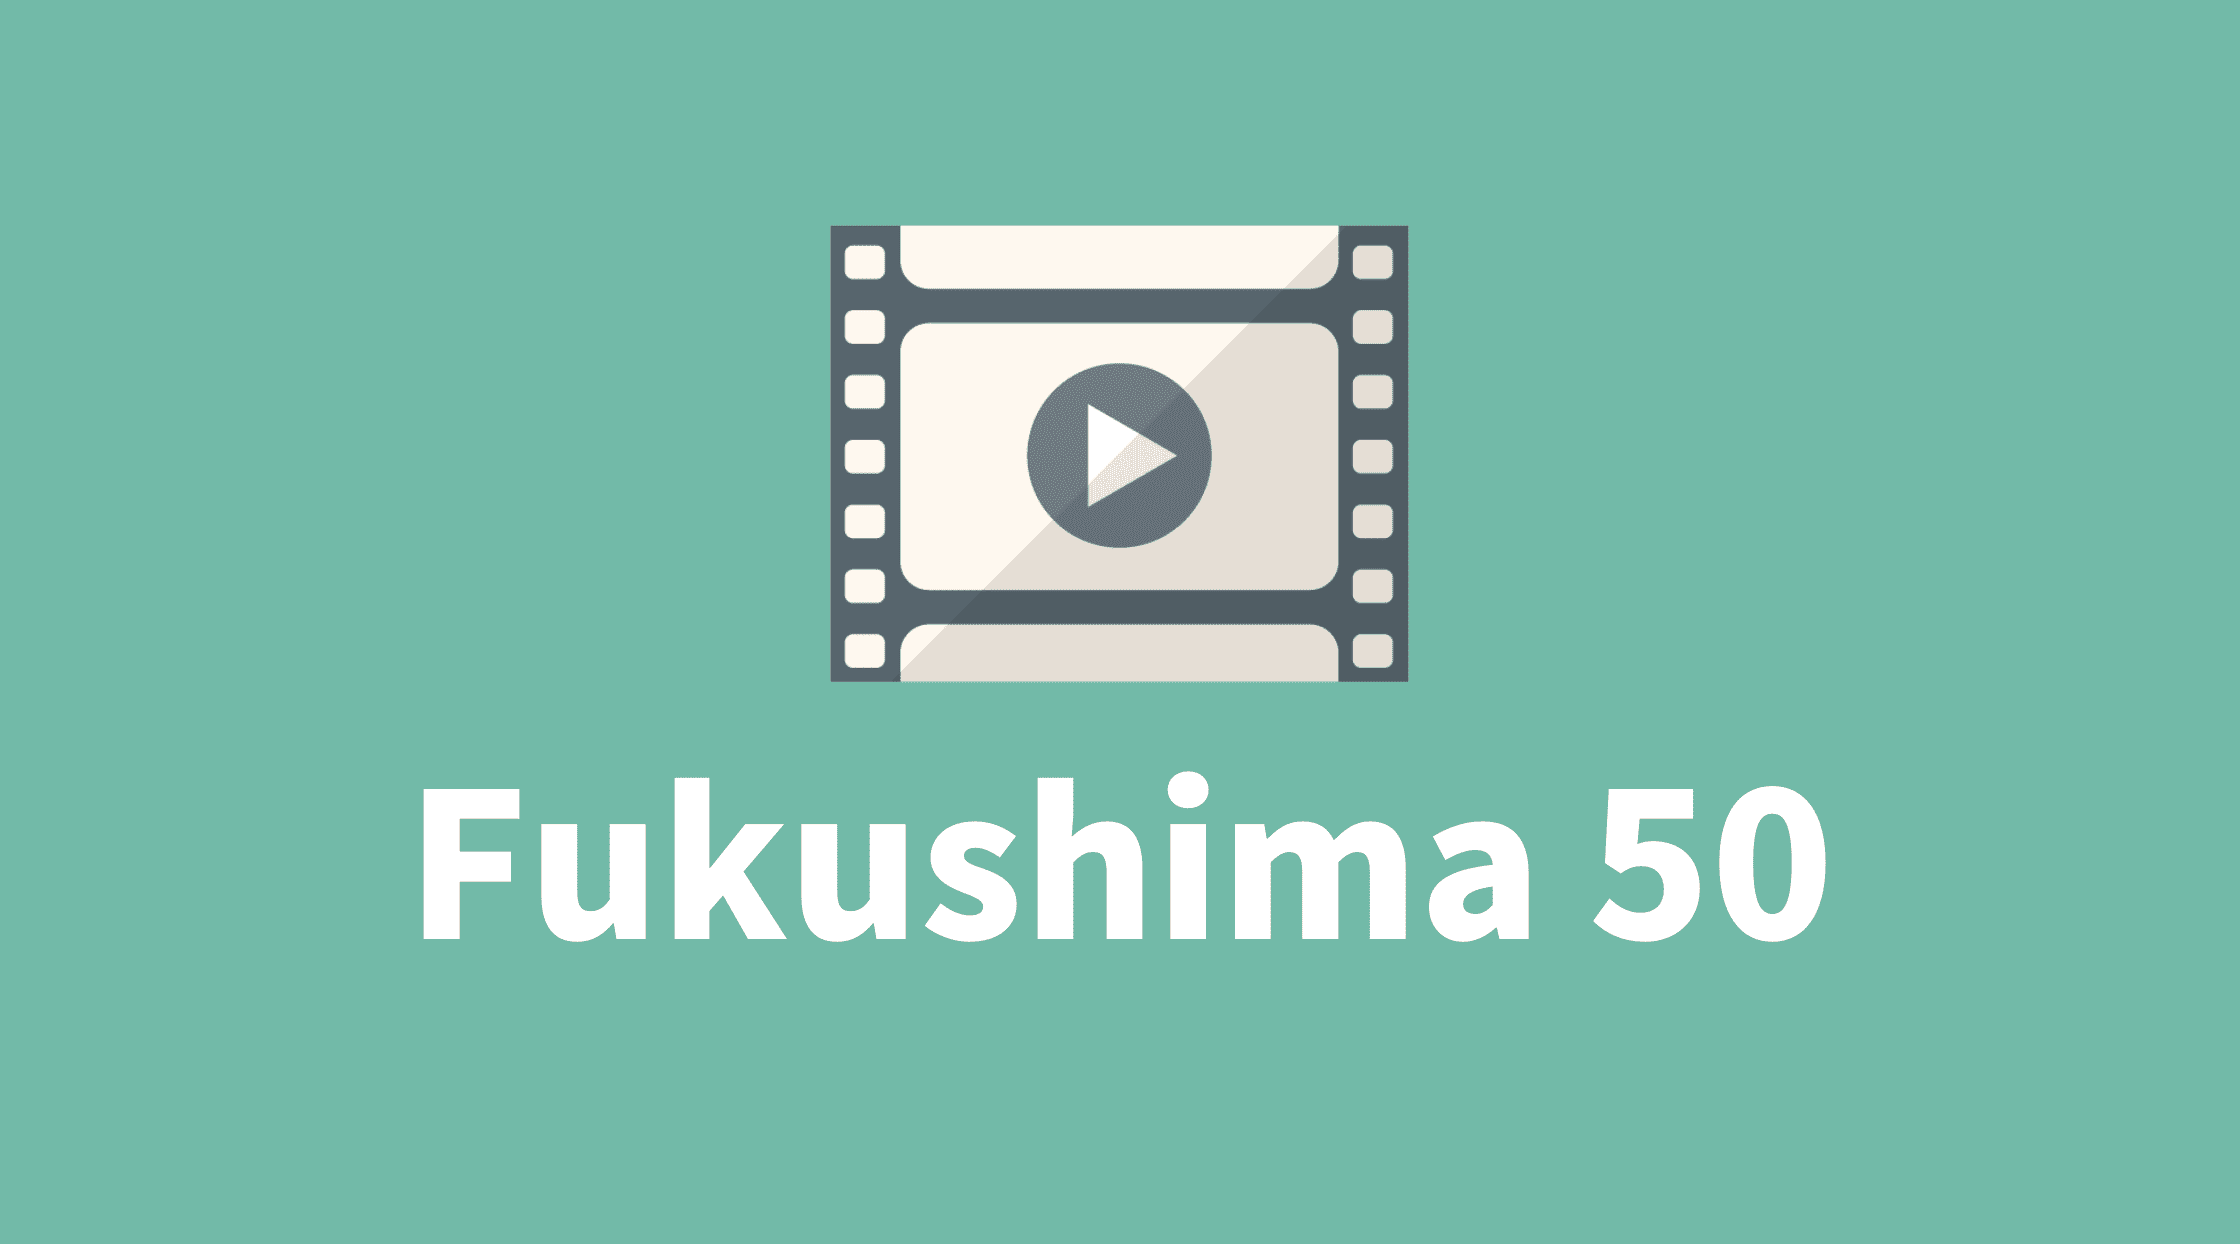 Fukushima 50